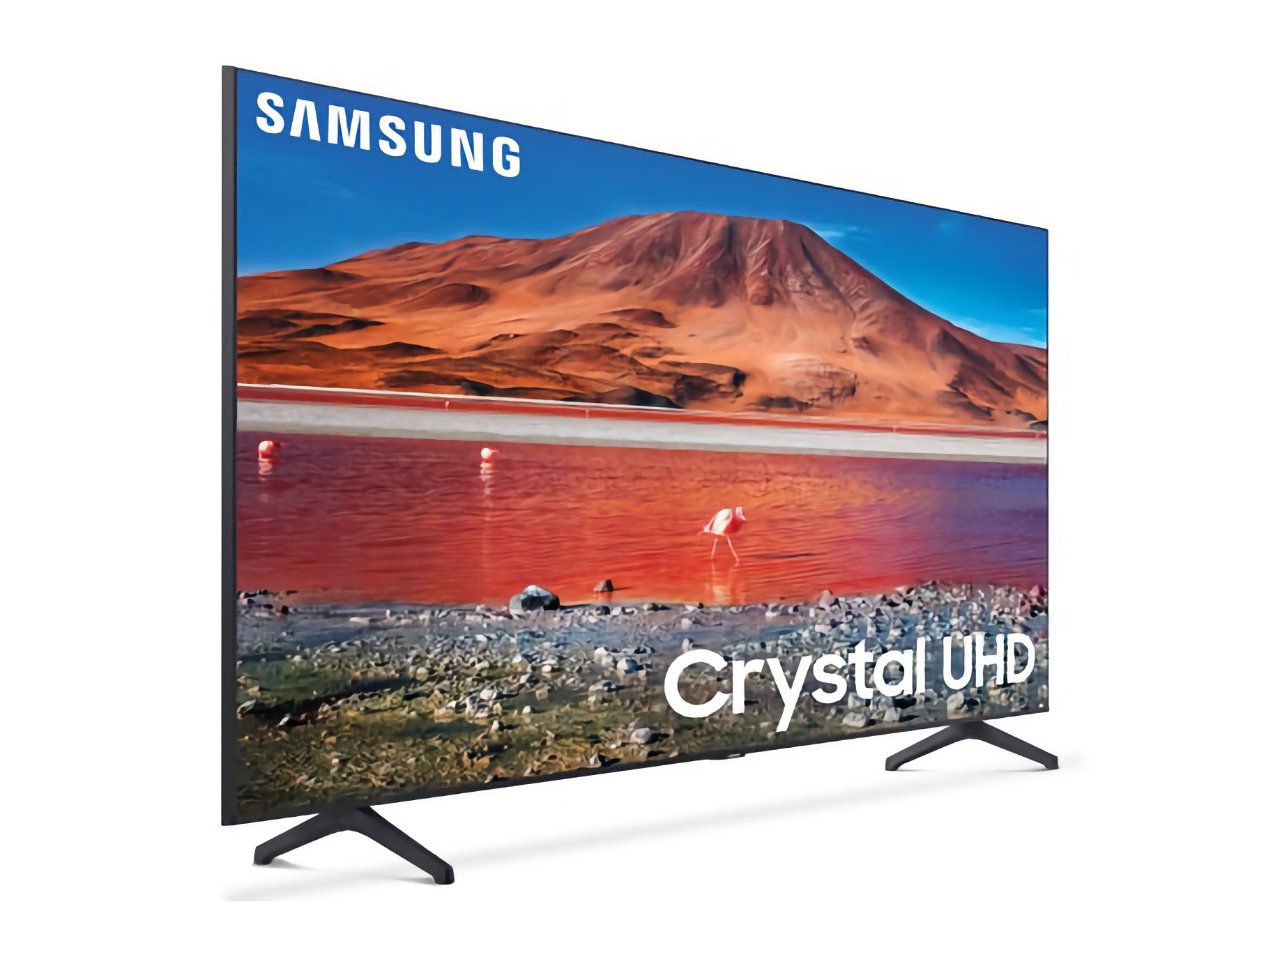  65-дюймовый 4K-телевизор Samsung "height =" 966 "loading =" lazy "class =" img-responsive article-image "/>
</div>
<p> <span class=